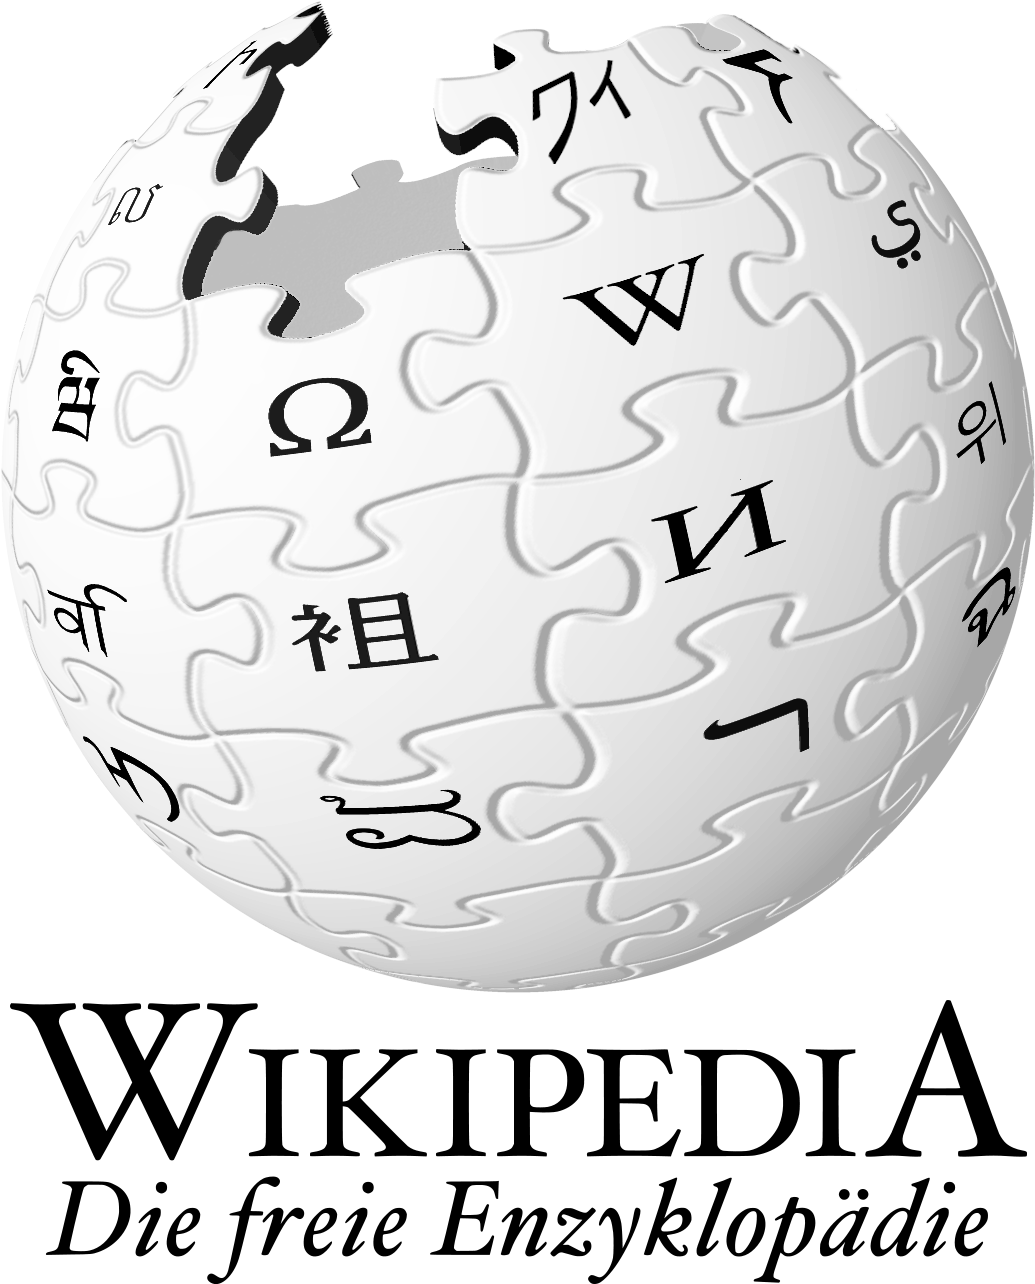 Datei Wikipedia Logo De Png Wikipedia - Wikipedia Logo Text Png (1058x1296), Png Download